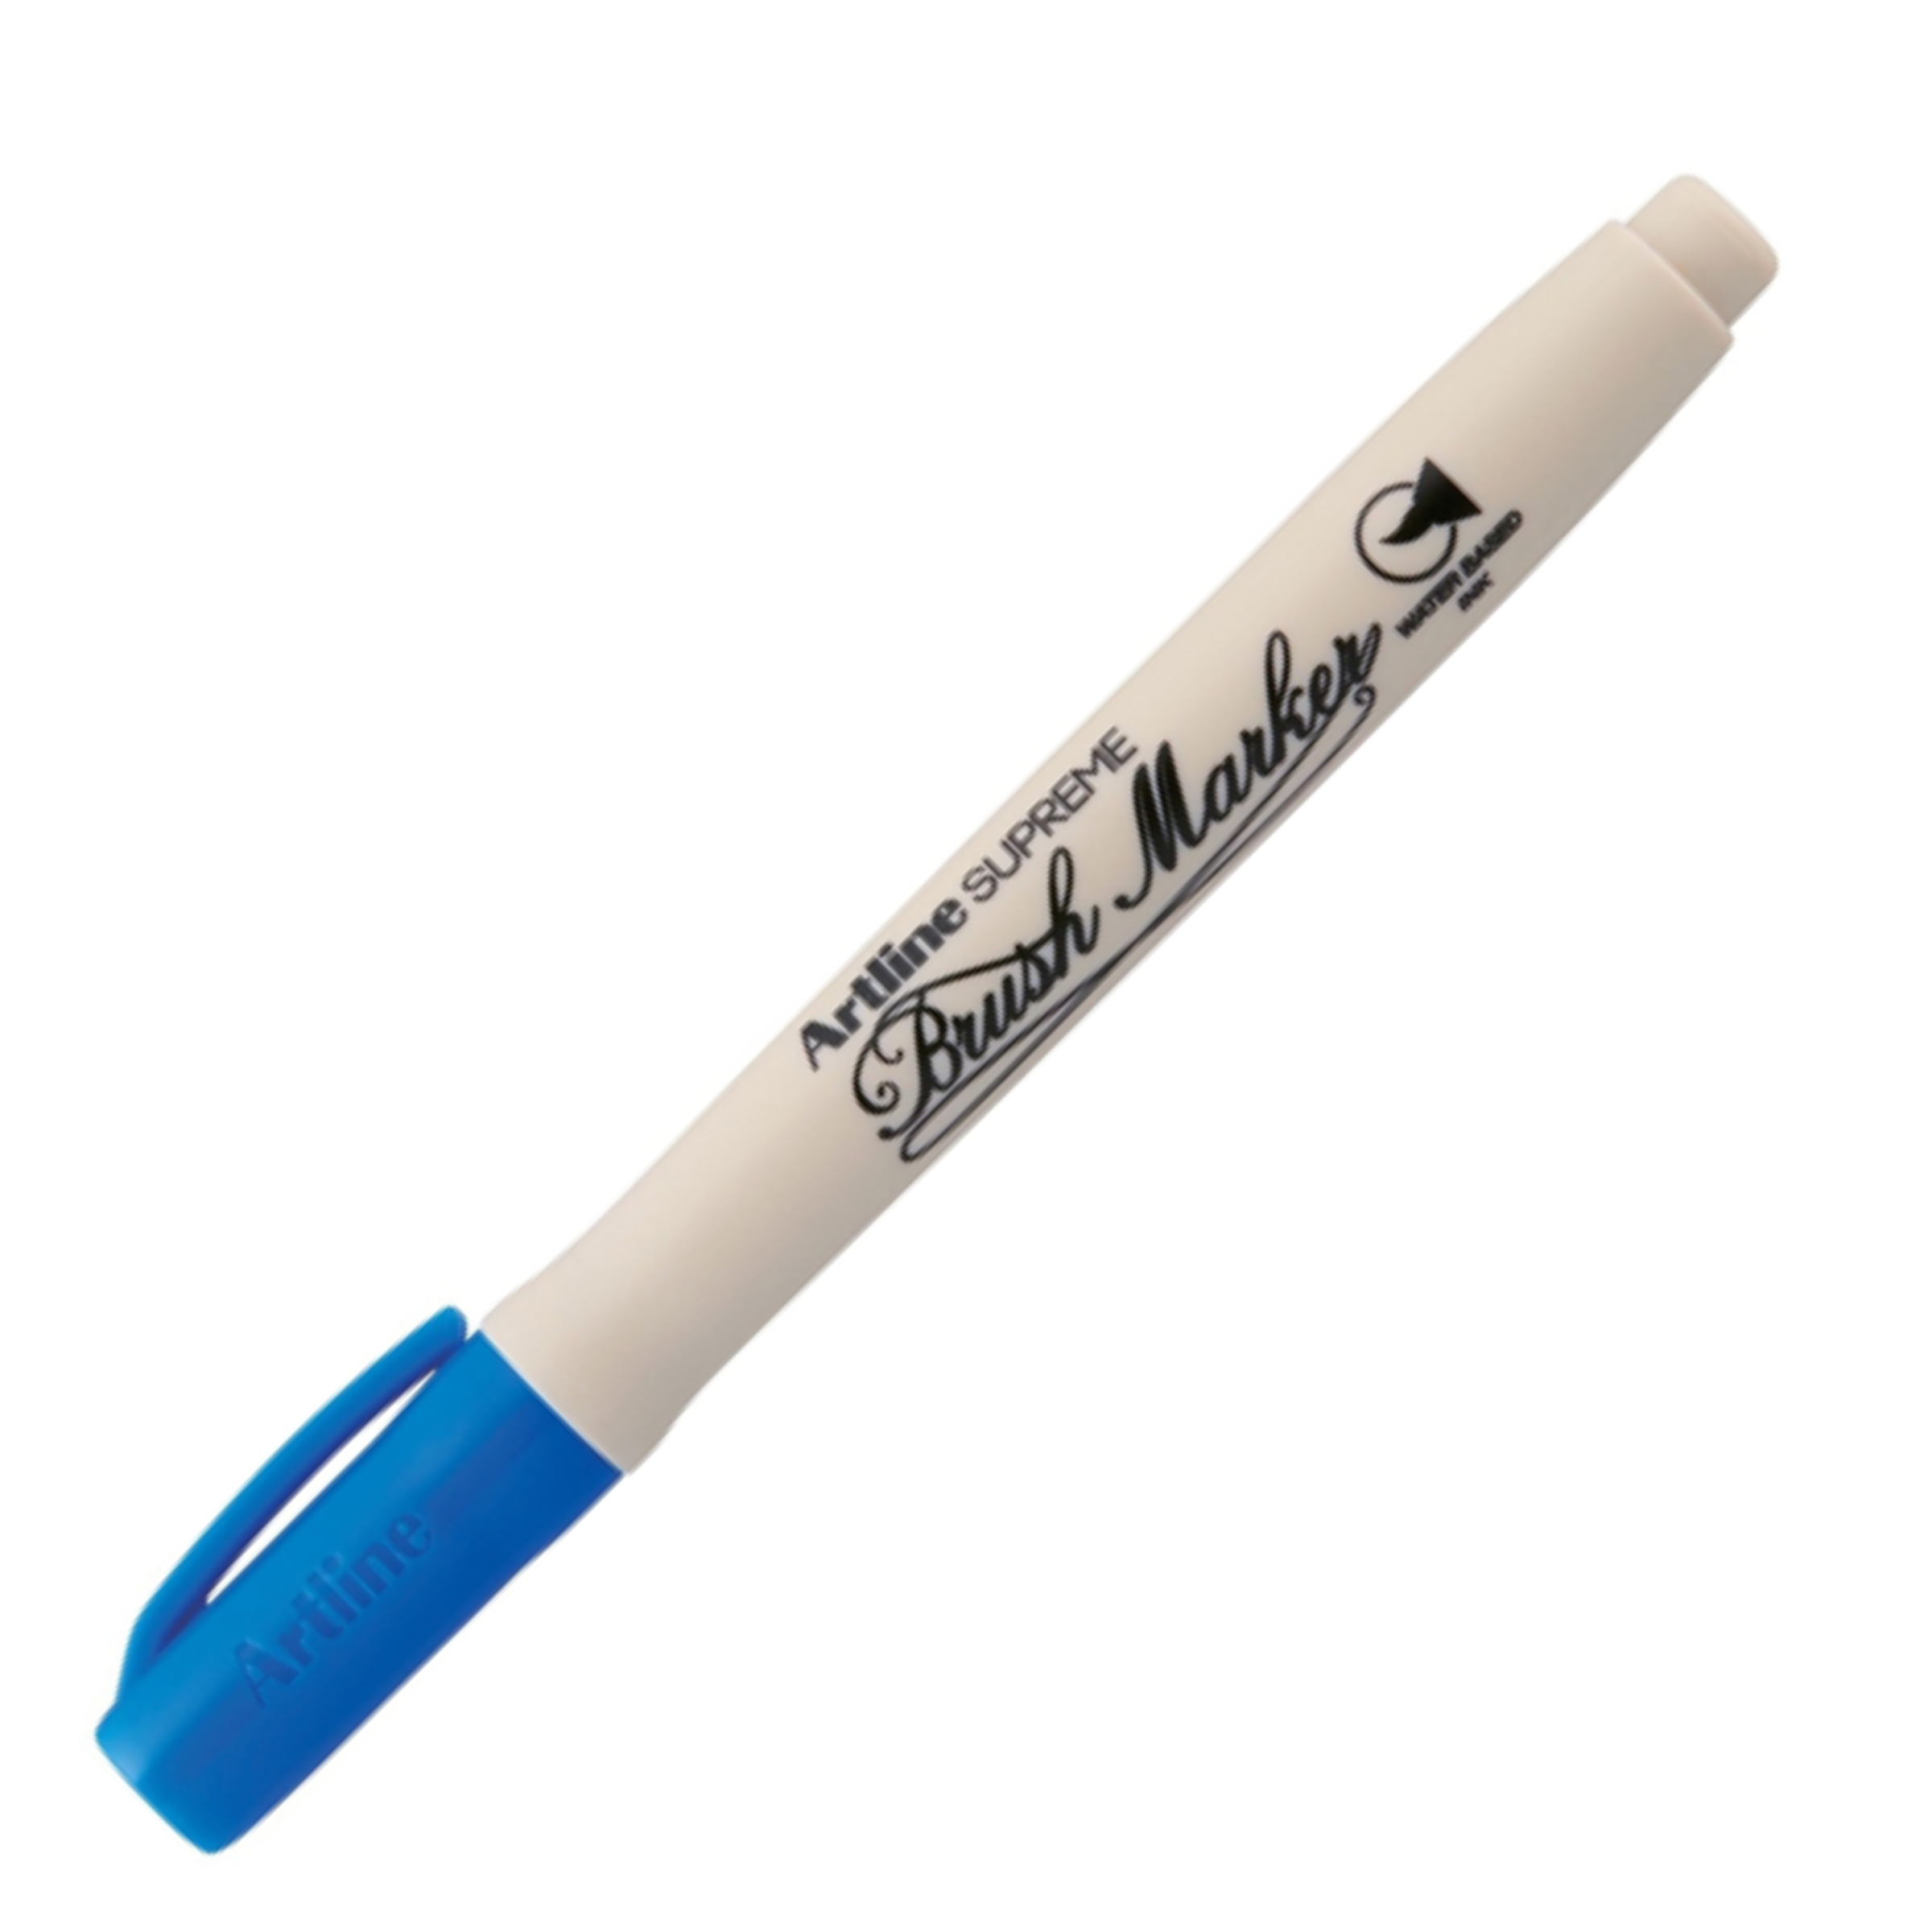 Artline Supreme Brush Marker Pen Blue Colour Marker Pack of 1